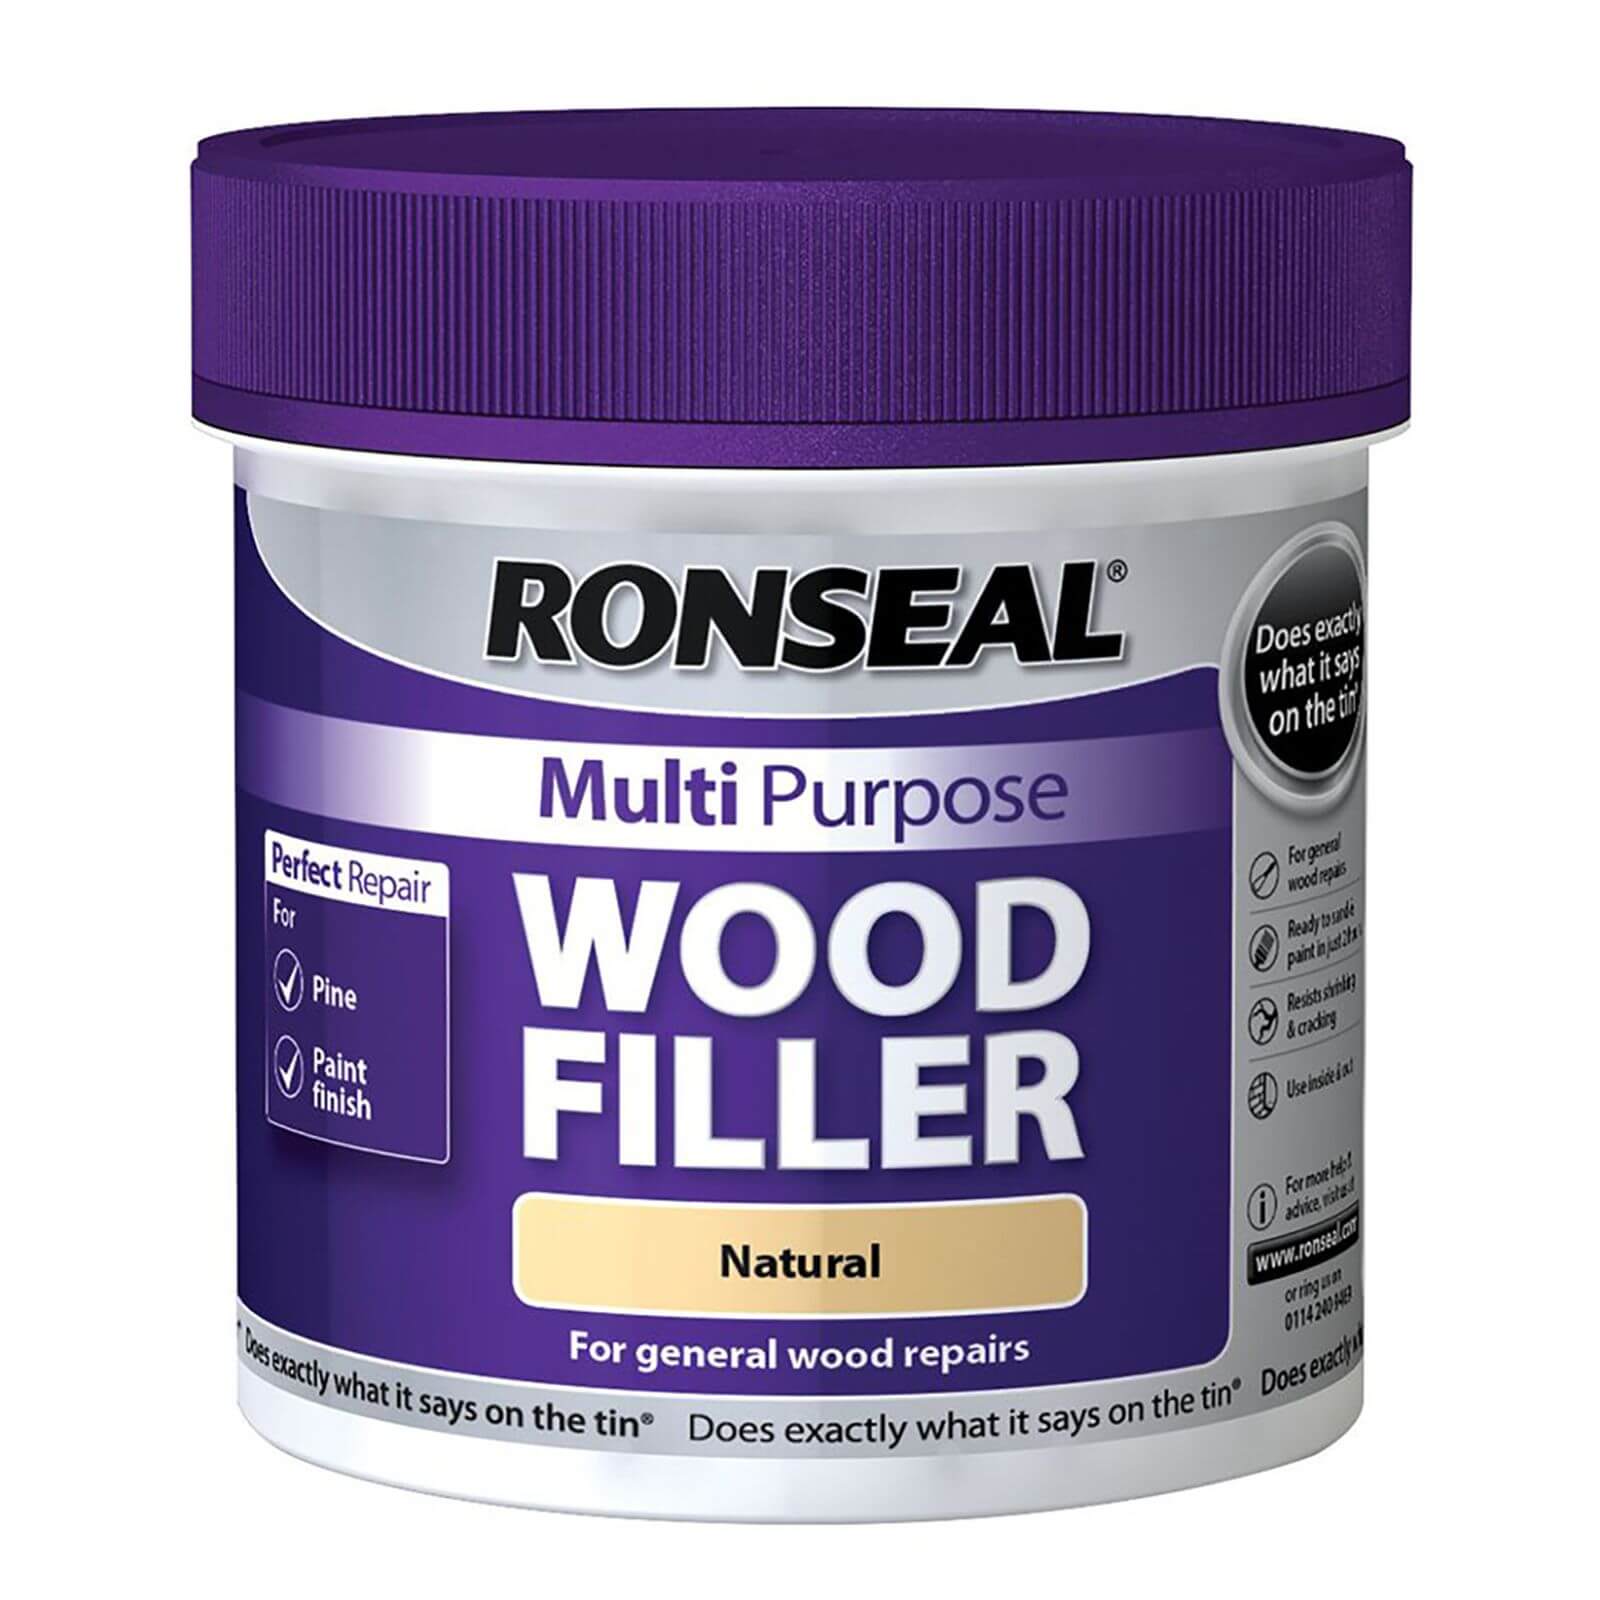 Ronseal Multipurpose Wood Filler Tub - Natural - 465g